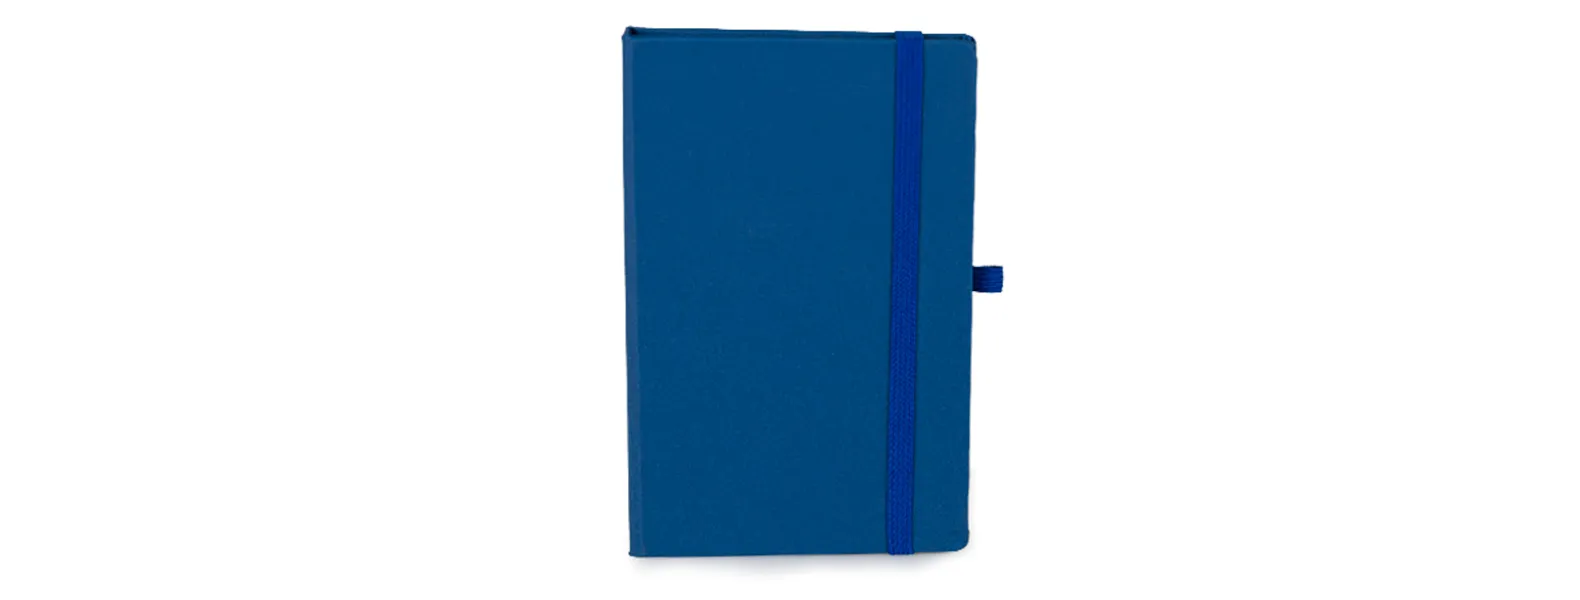 Caderno para anotações azul com capa dura. Conta com 80 folhas pautadas, marcador de página, porta caneta e elástico para fechamento. Gramatura da folha de 70 g/m2.